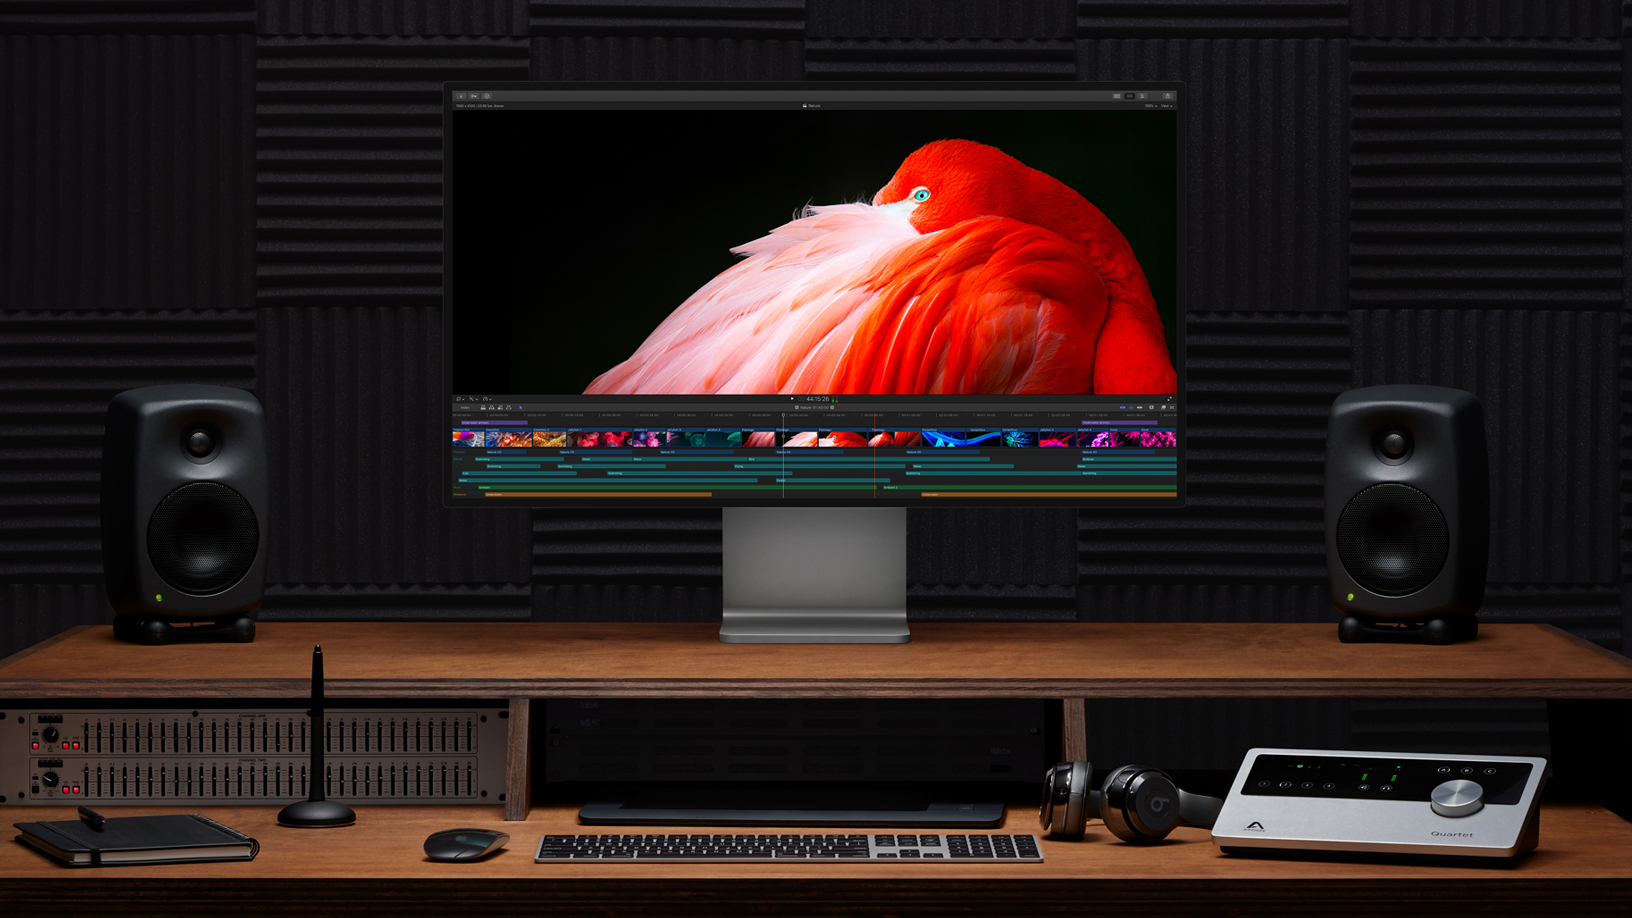 אפל משיקה את ה-Mac Pro 2019 במחיר שמגיע ליותר מ-182,000 ש"ח